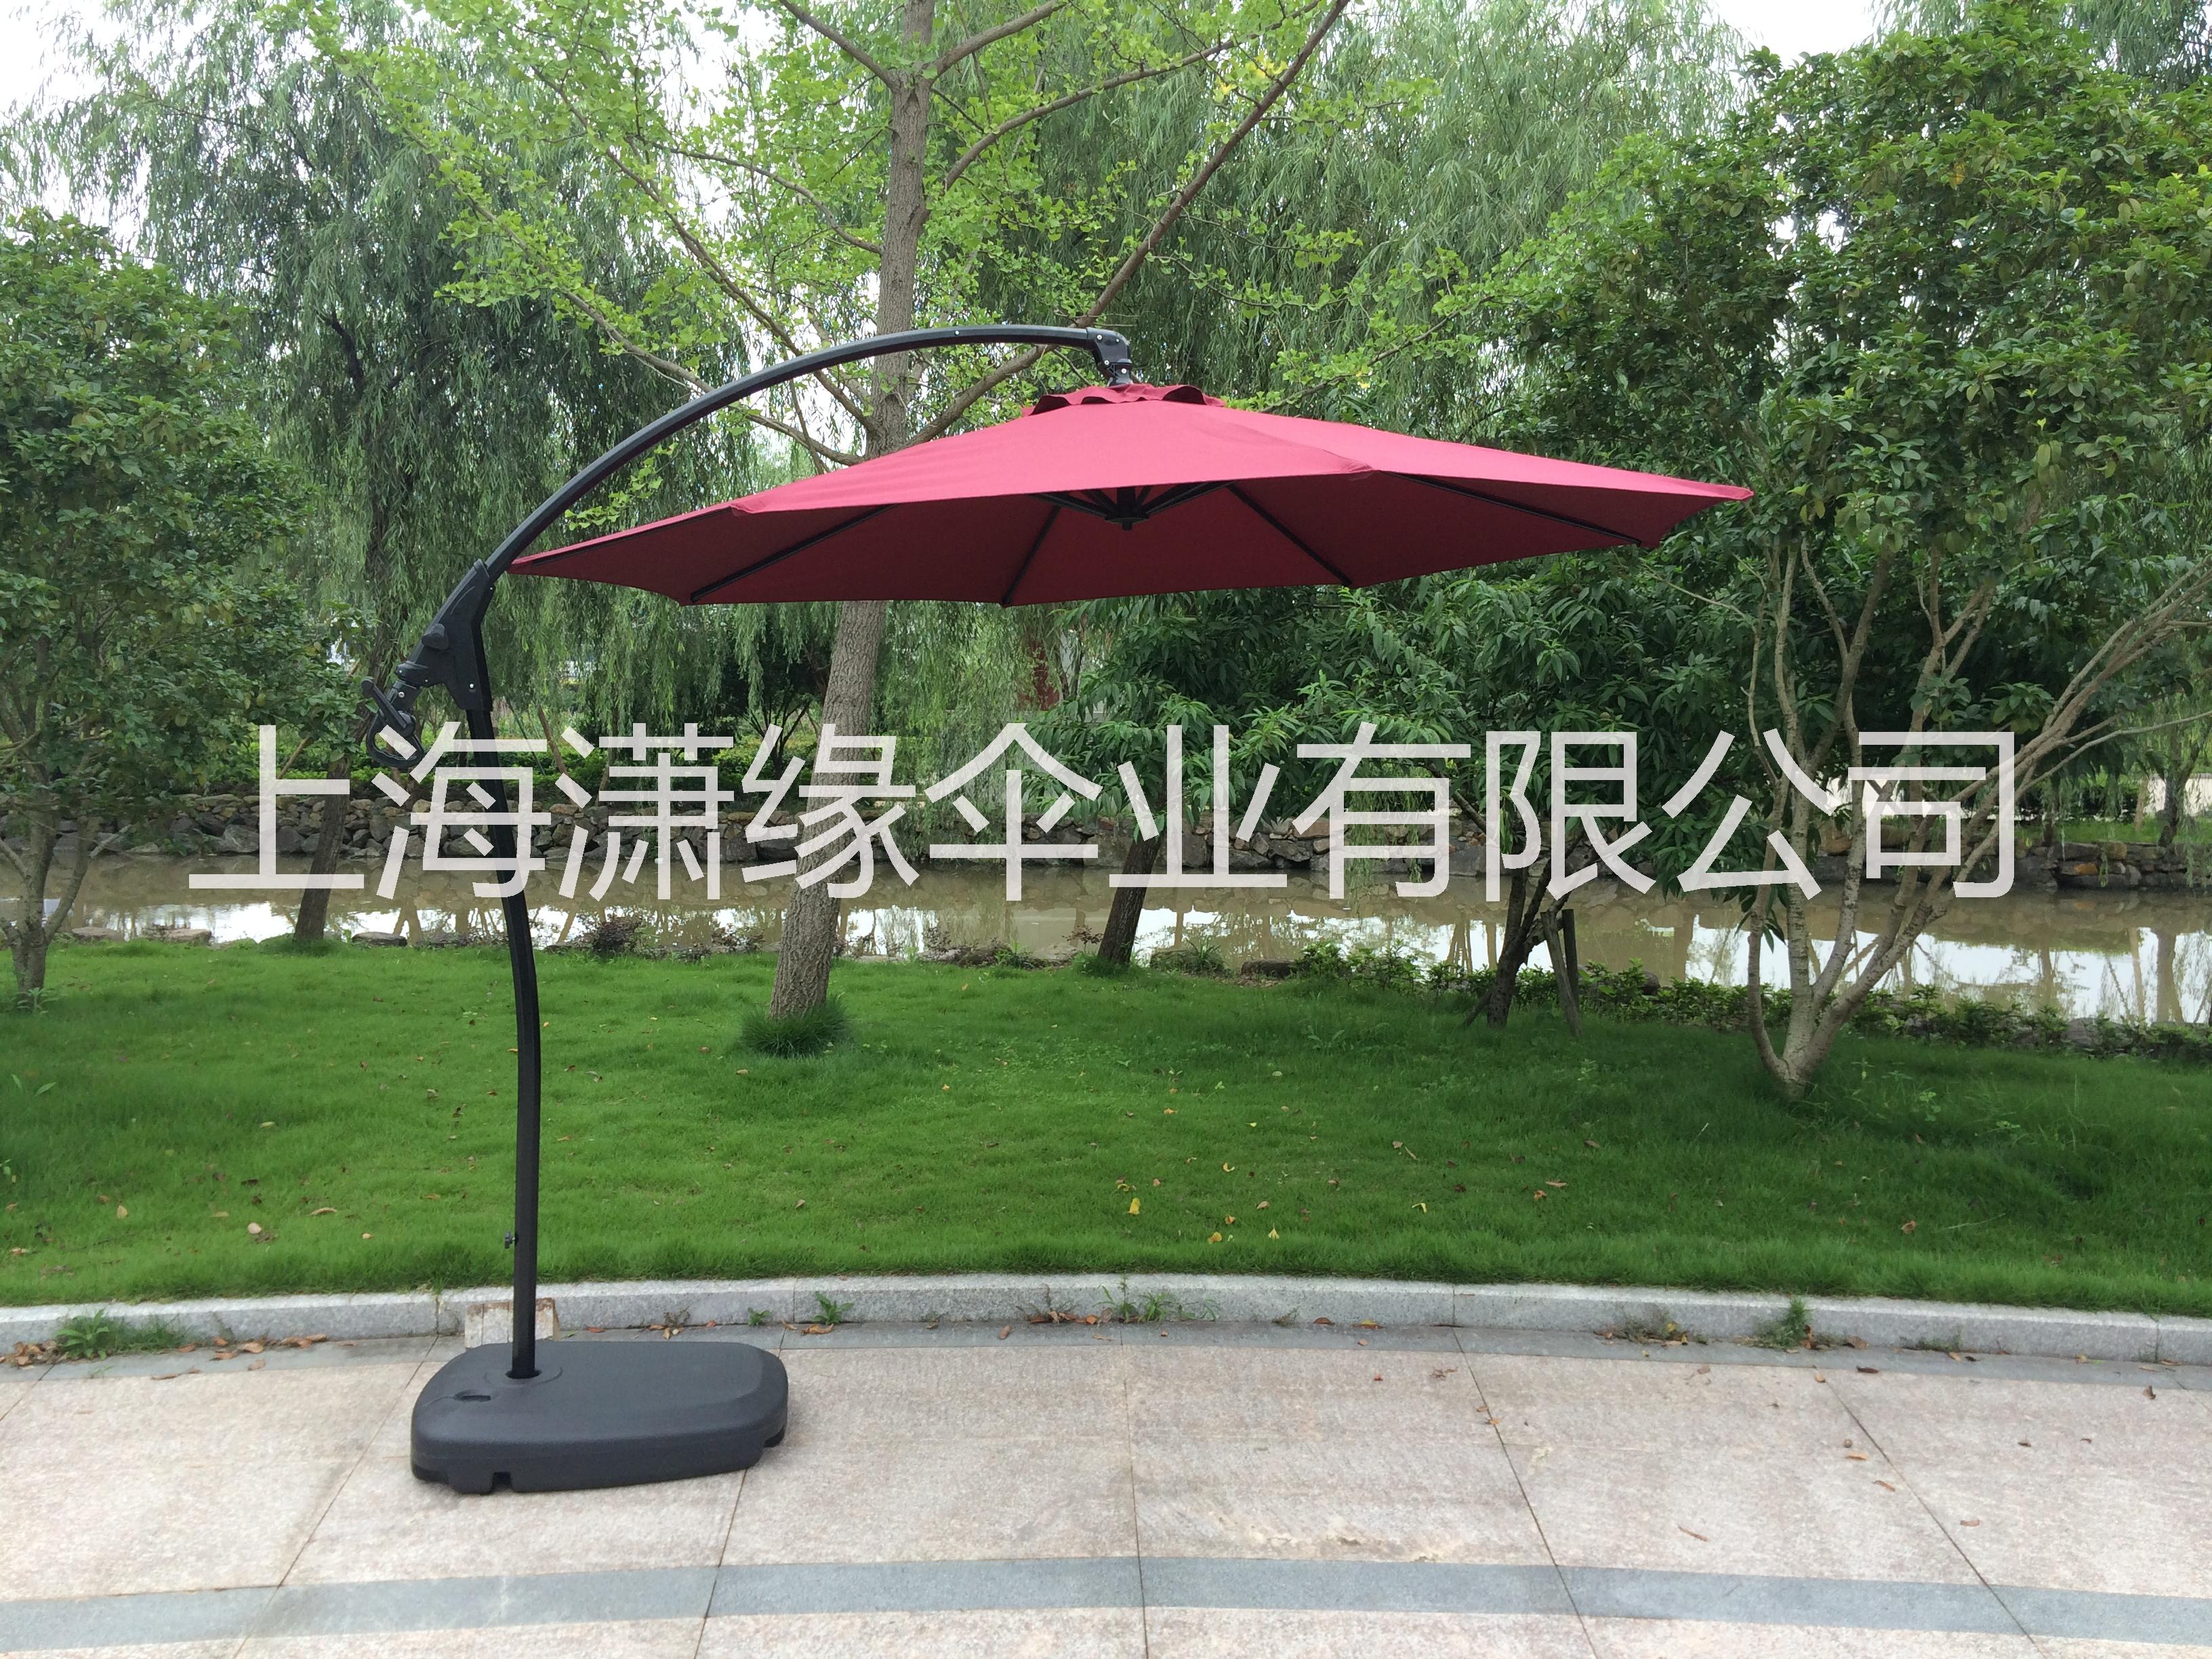 上海香蕉伞批发定制 侧立式庭院伞 沙滩伞厂家直销图片